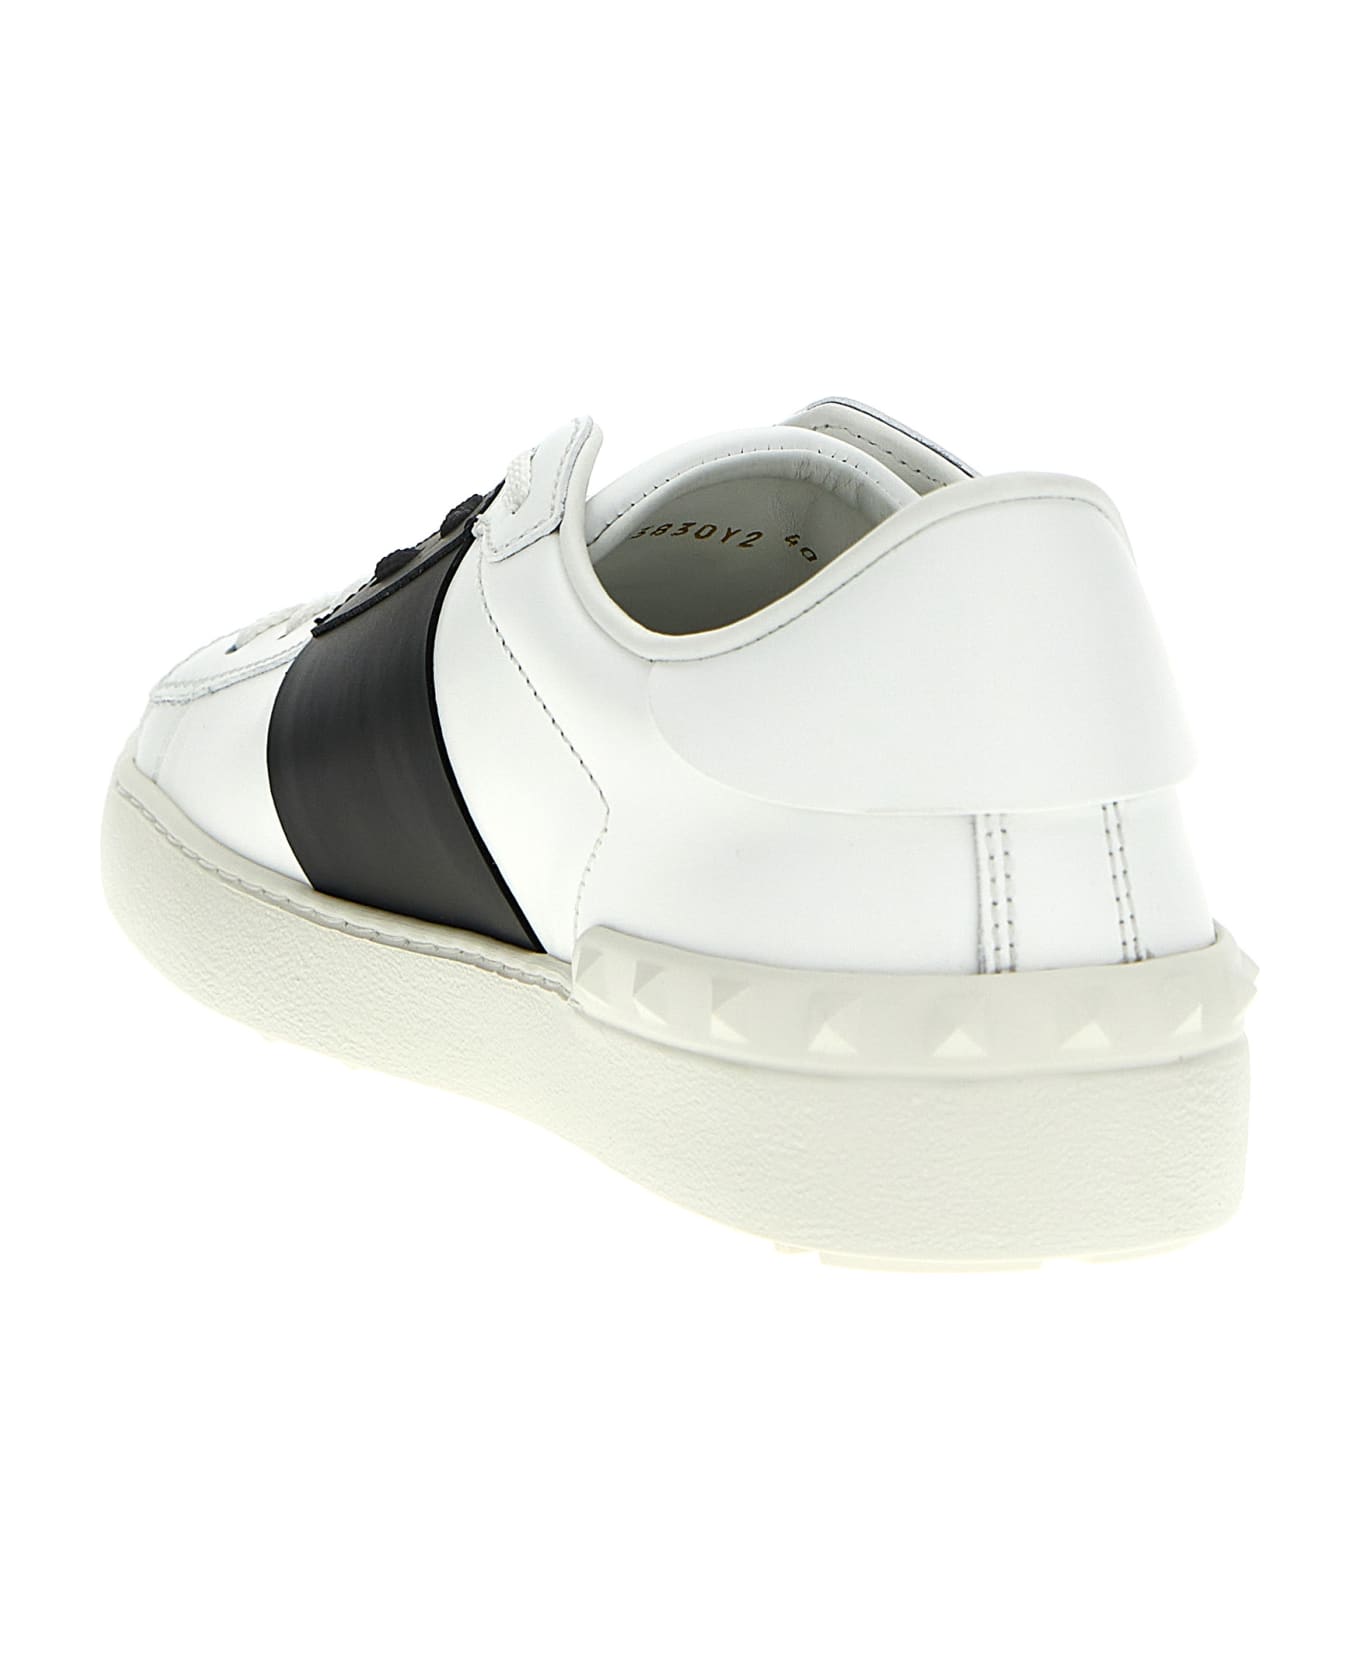 Valentino Garavani Garavani Leather Sneakers - White スニーカー